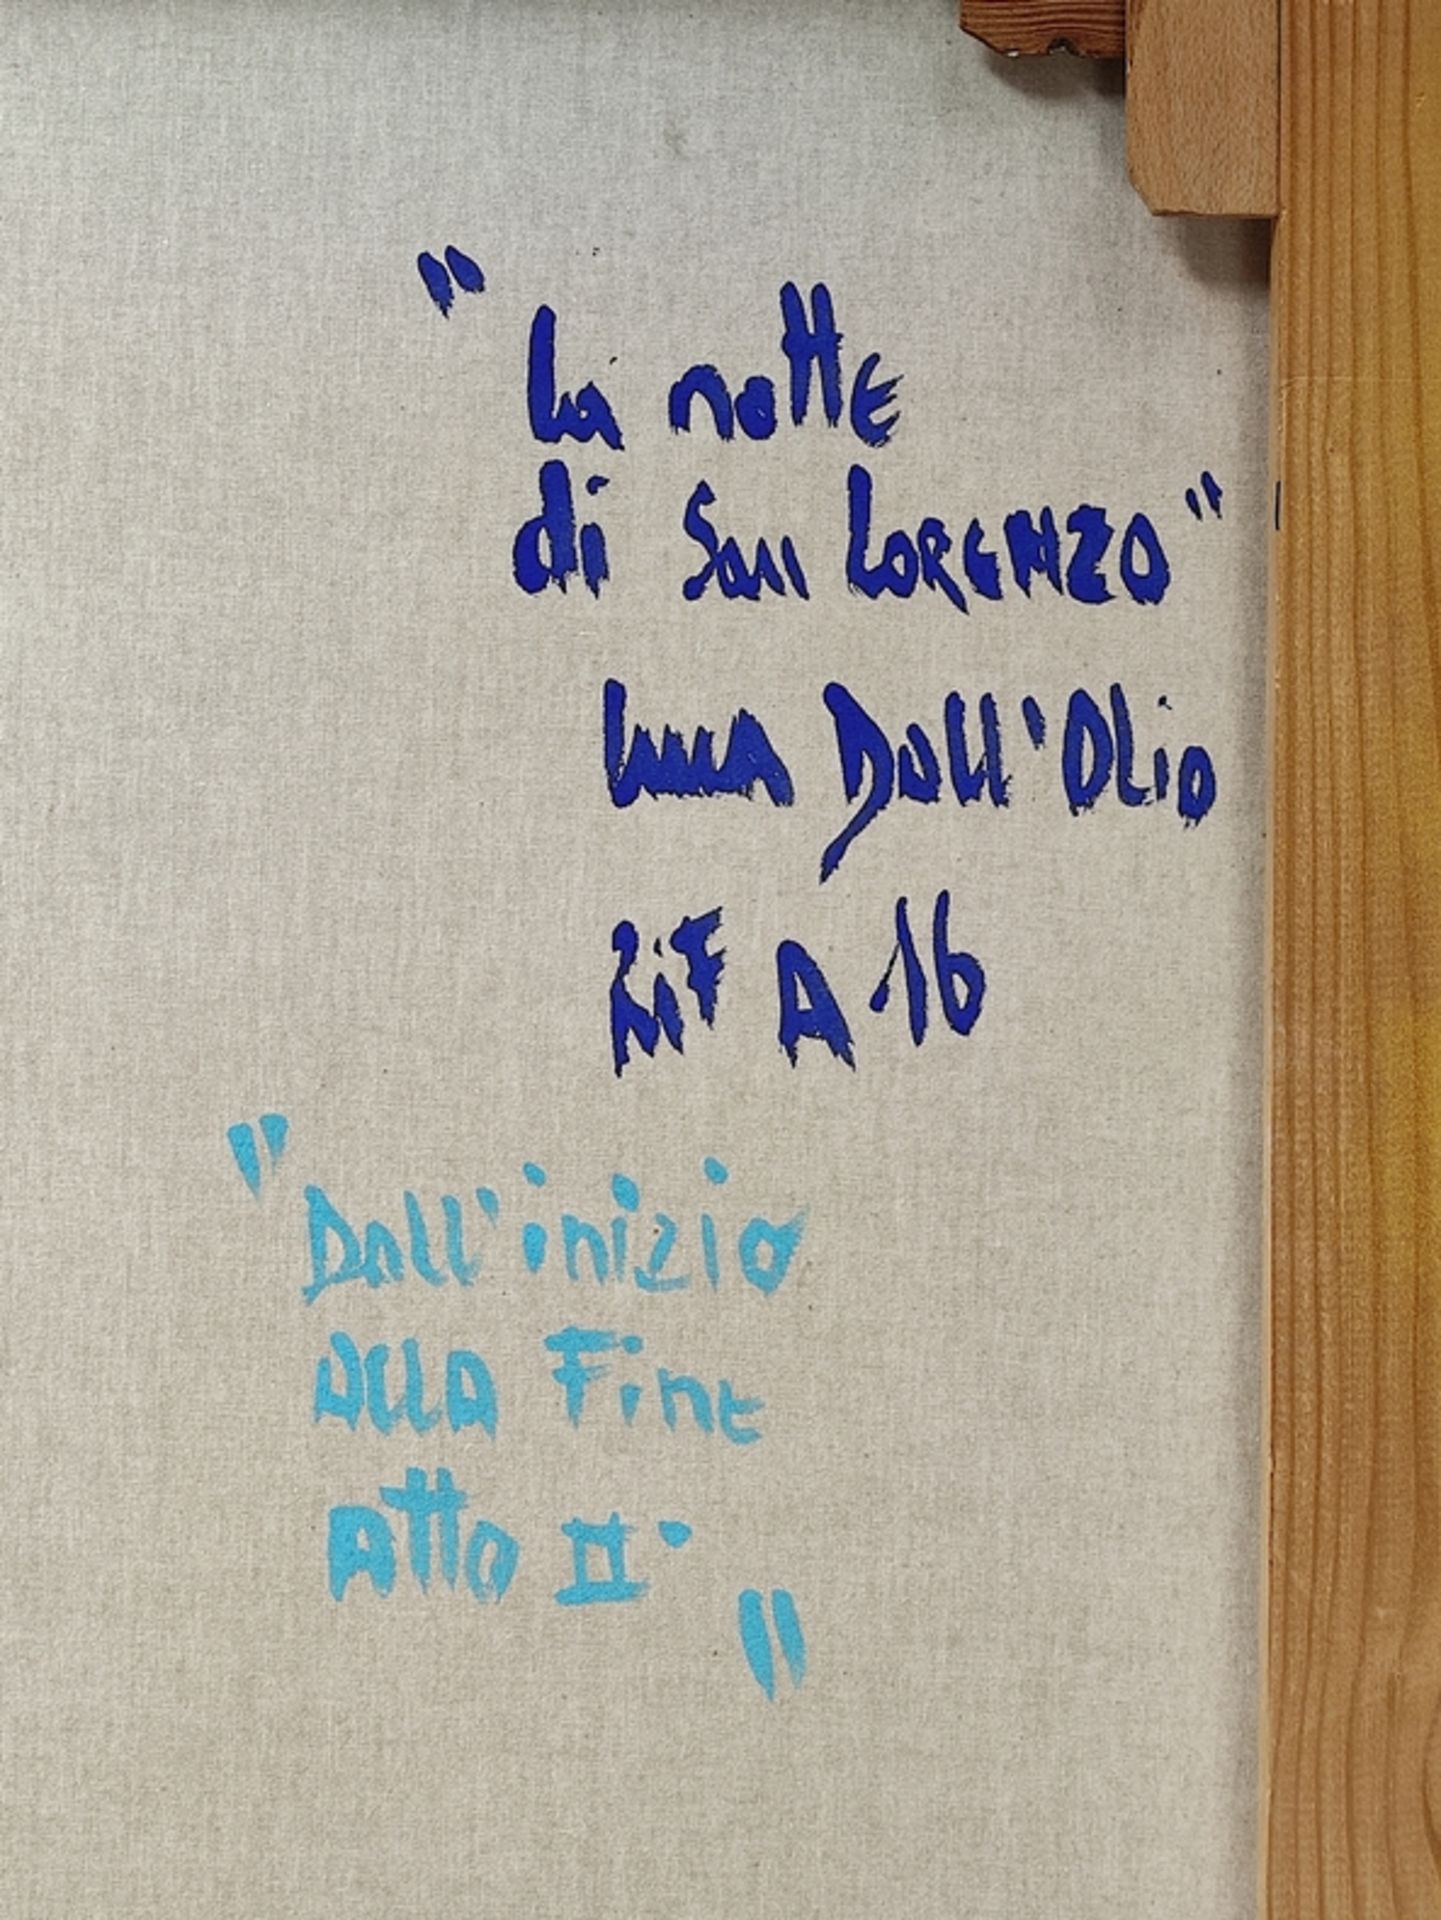 Dall'Olio, Luca (1958 Chiari) "La notte di San Lorenzo" - "Dall'inizio alla fine atto II", farbenkr - Bild 2 aus 4